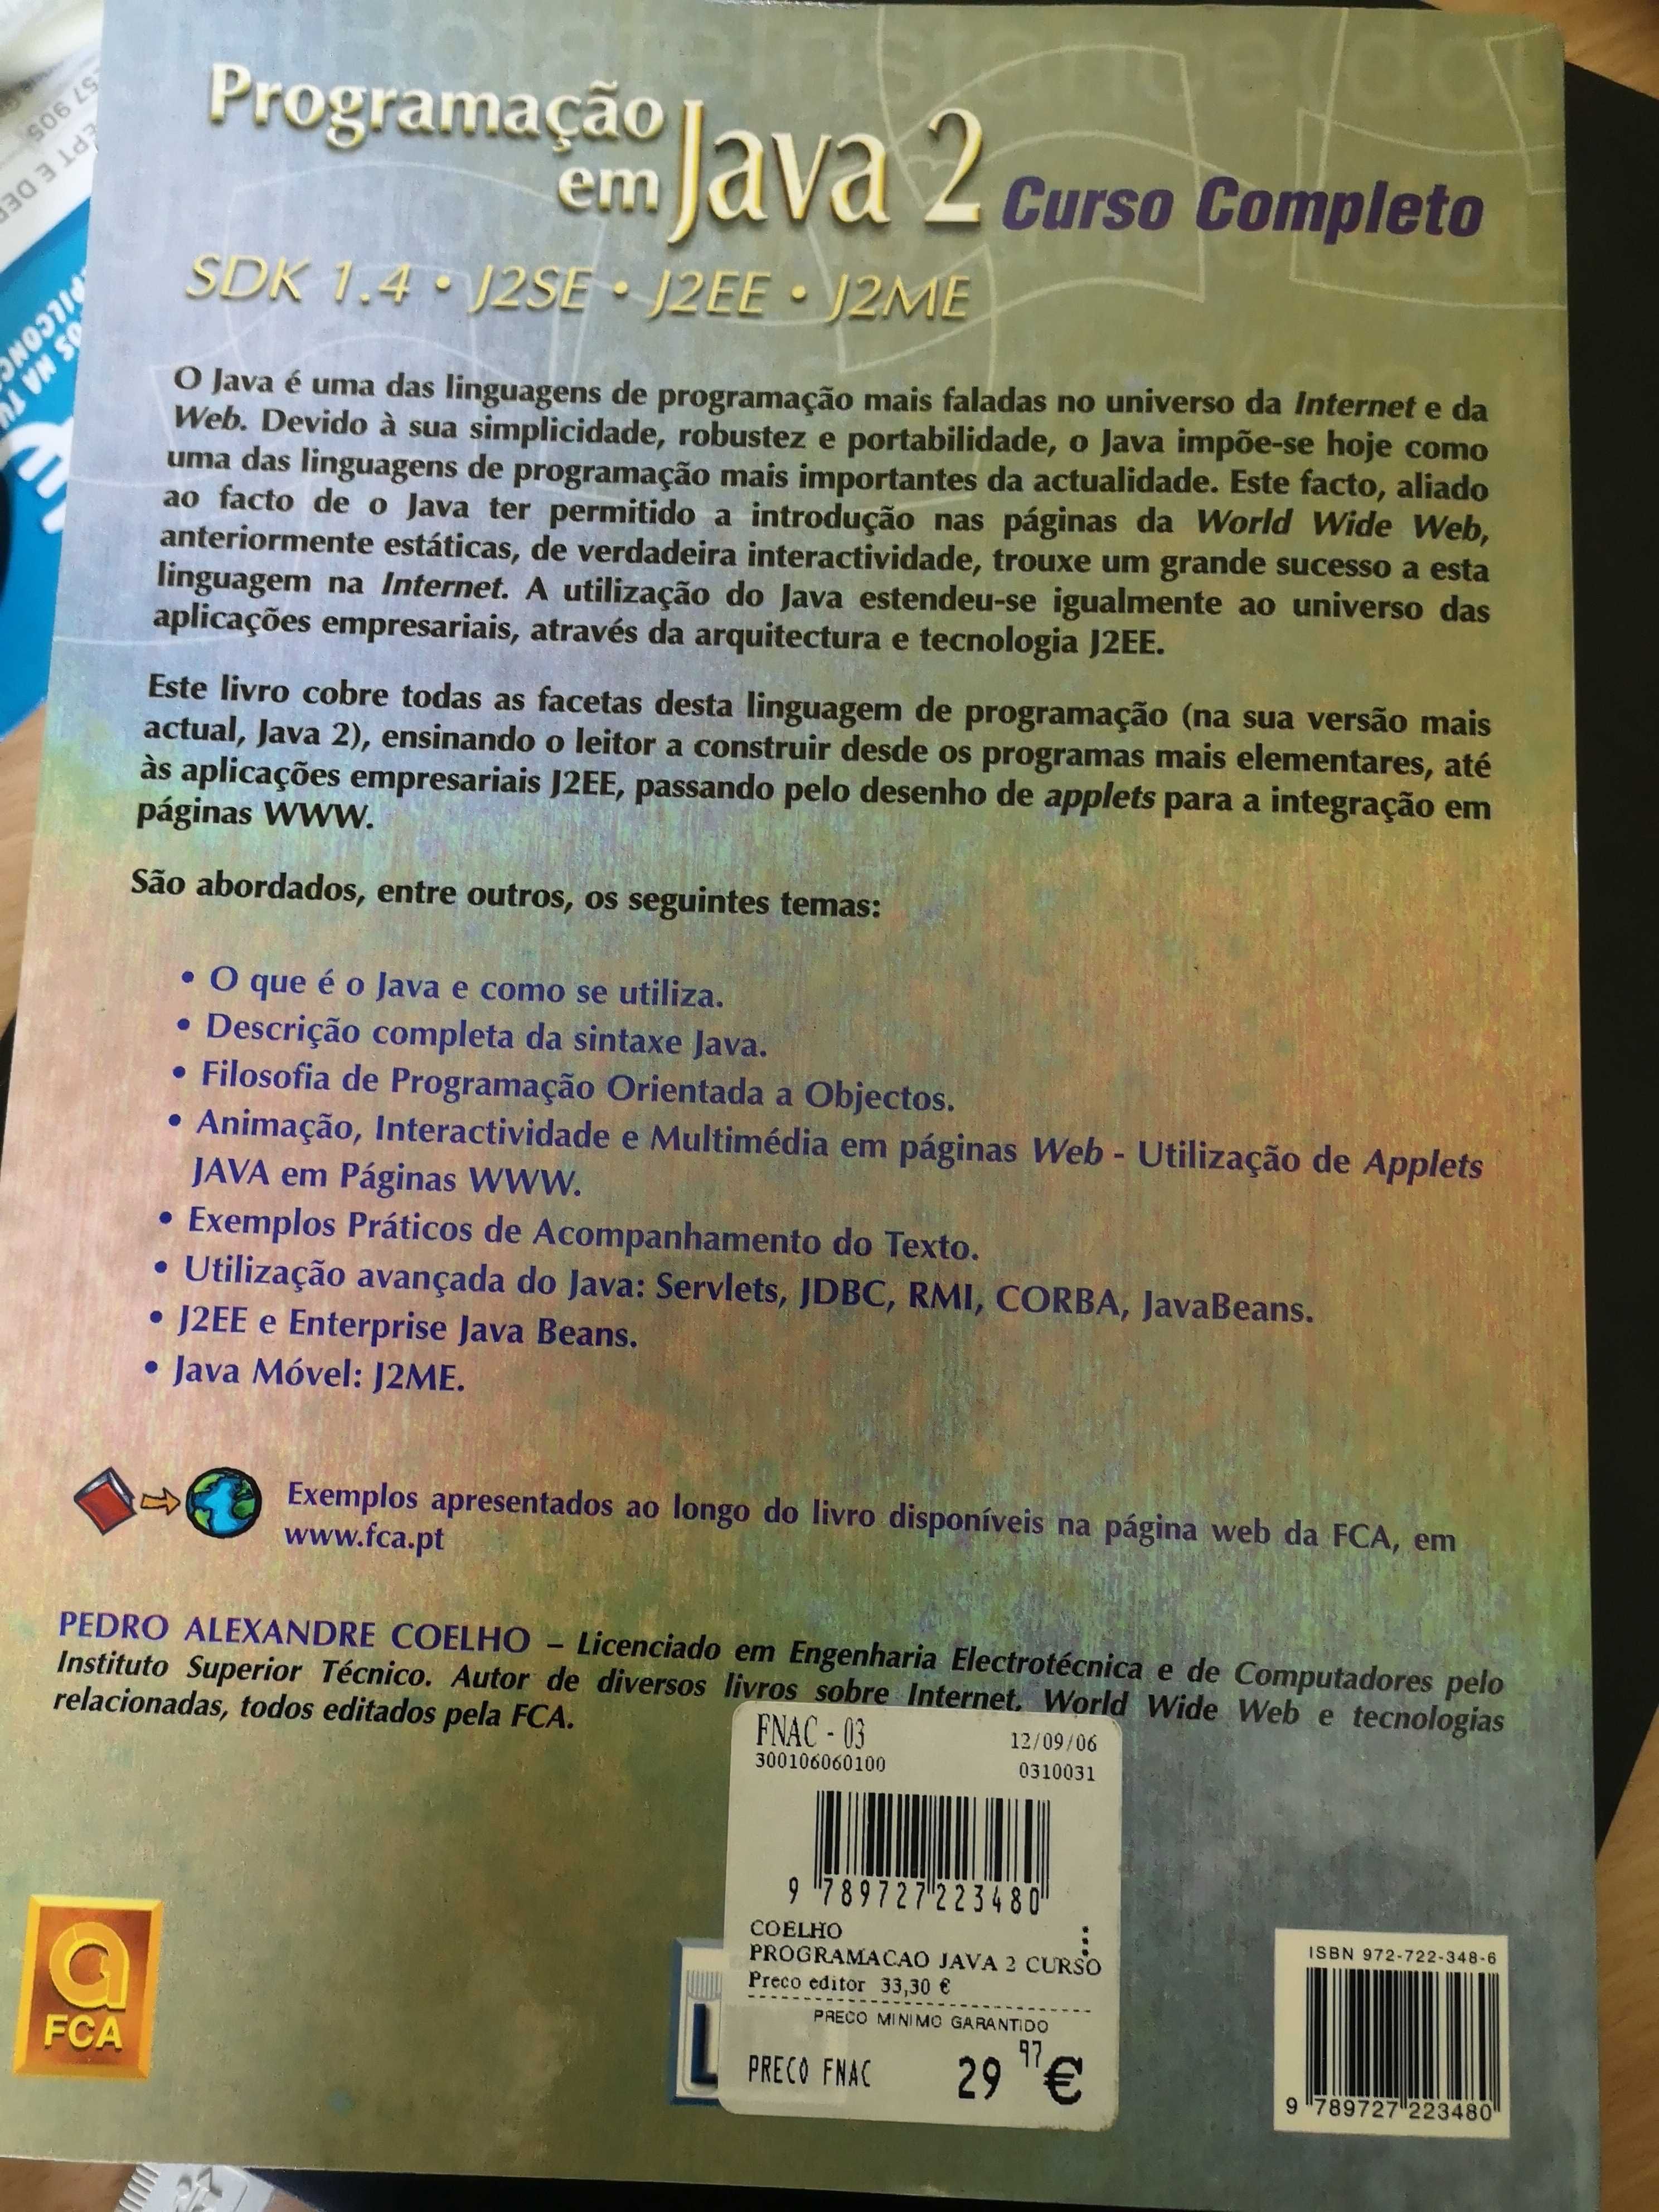 Livro "Programação em Java 2" de Pedro Coelho